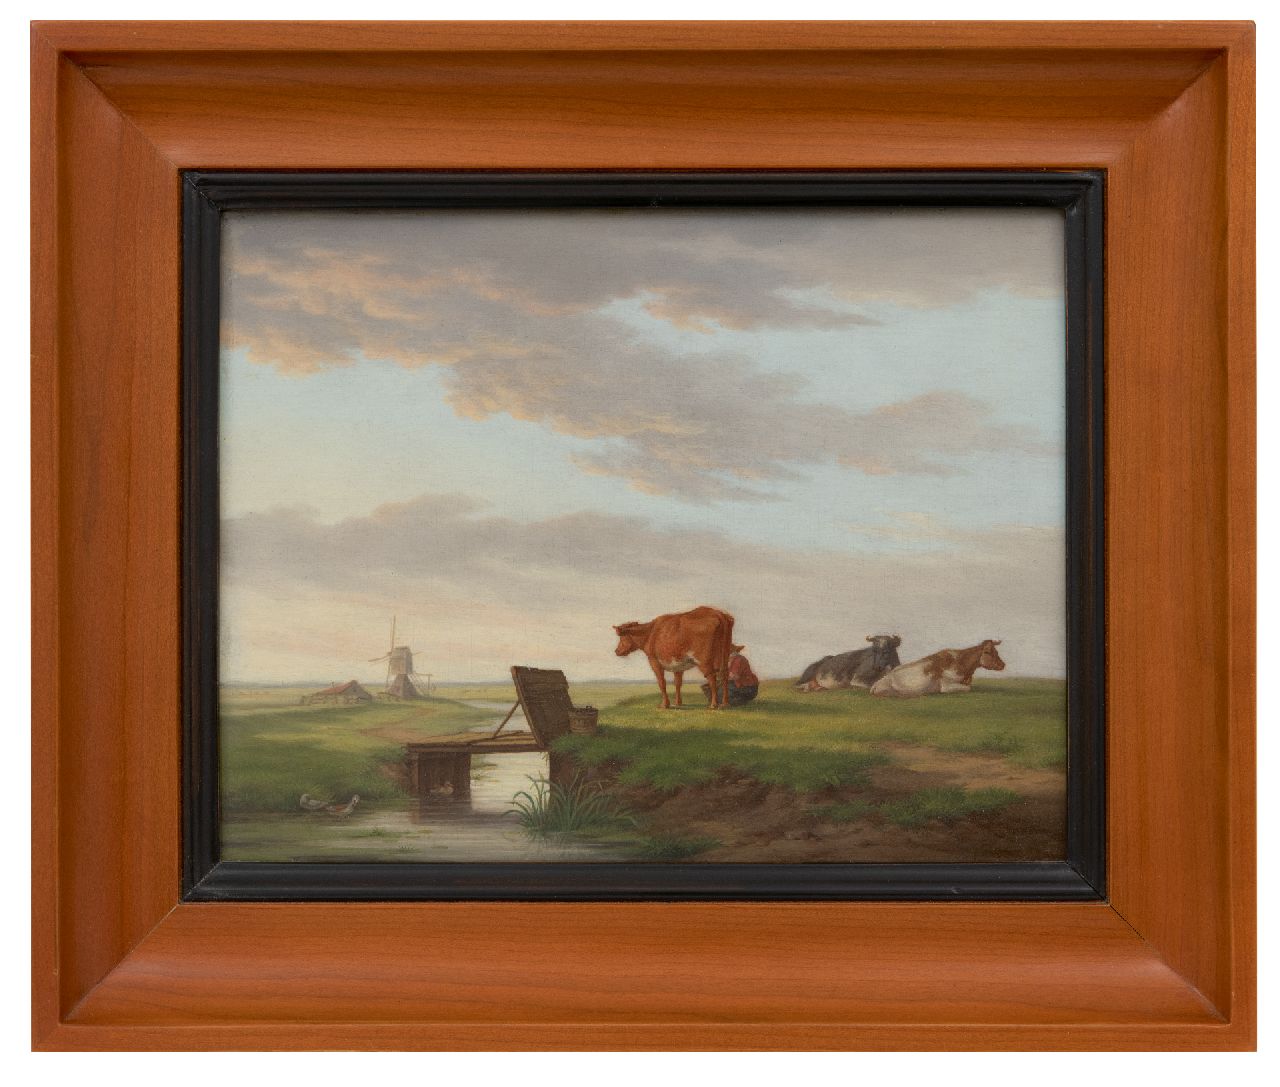 Burgh H.A. van der | Hendrik Adam van der Burgh | Schilderijen te koop aangeboden | Koeien in een landschap met molen, olieverf op paneel 20,4 x 26,3 cm, gesigneerd rechtsonder en gedateerd 1821